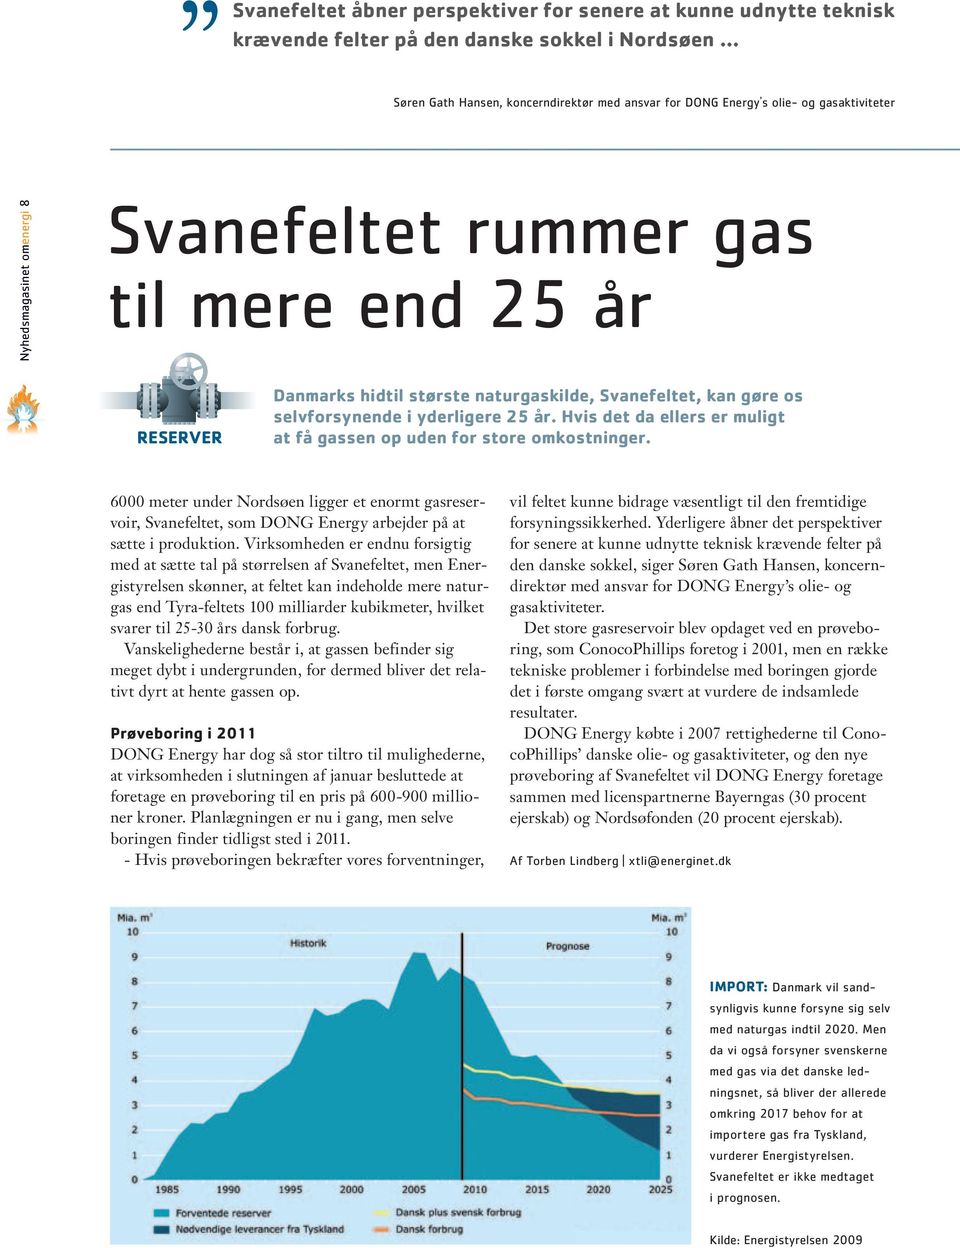 Hvis det da ellers er muligt at få gassen op uden for store omkostninger. 6000 meter under Nordsøen ligger et enormt gasreservoir, Svanefeltet, som DONG Energy arbejder på at sætte i produktion.